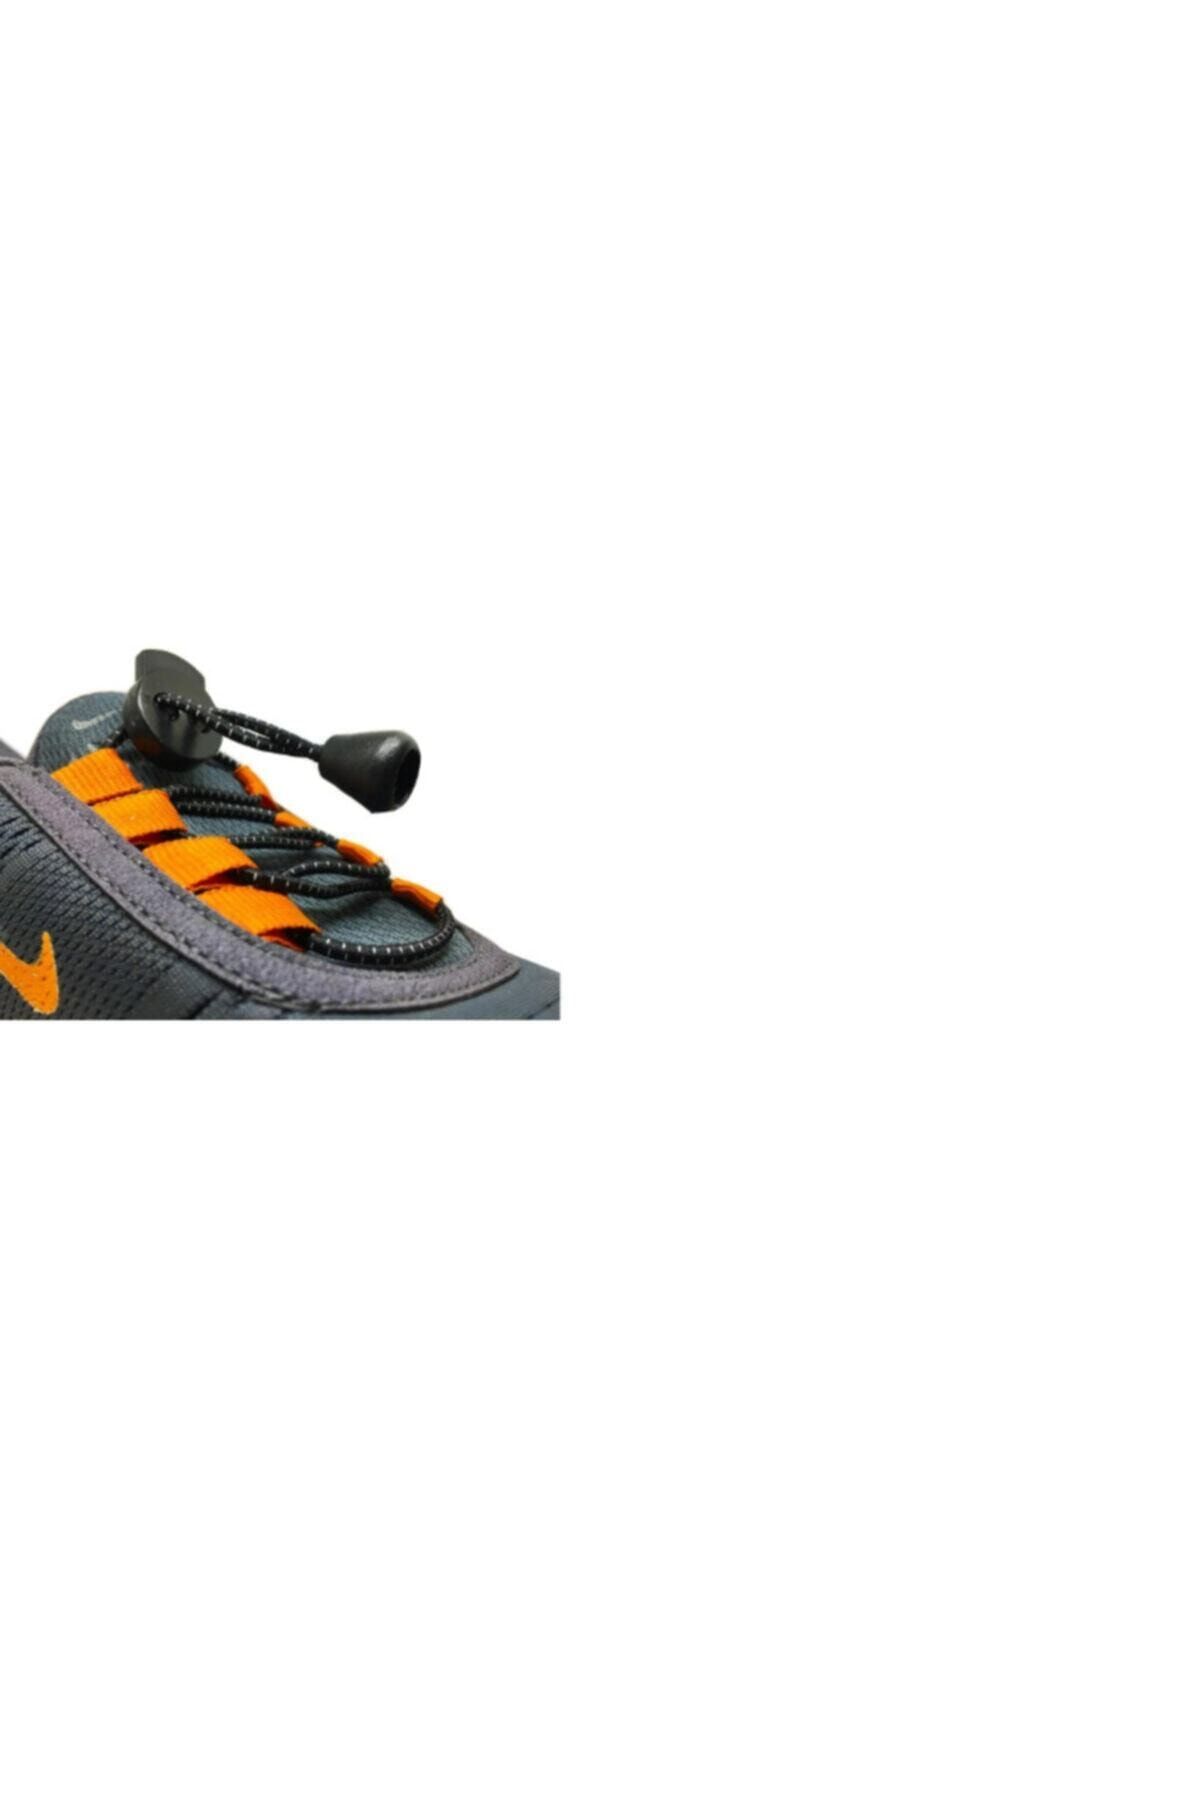 LUCKY Siyah Akıllı Kilitli Elastik Ayakkabı Bağcık 100 Cm